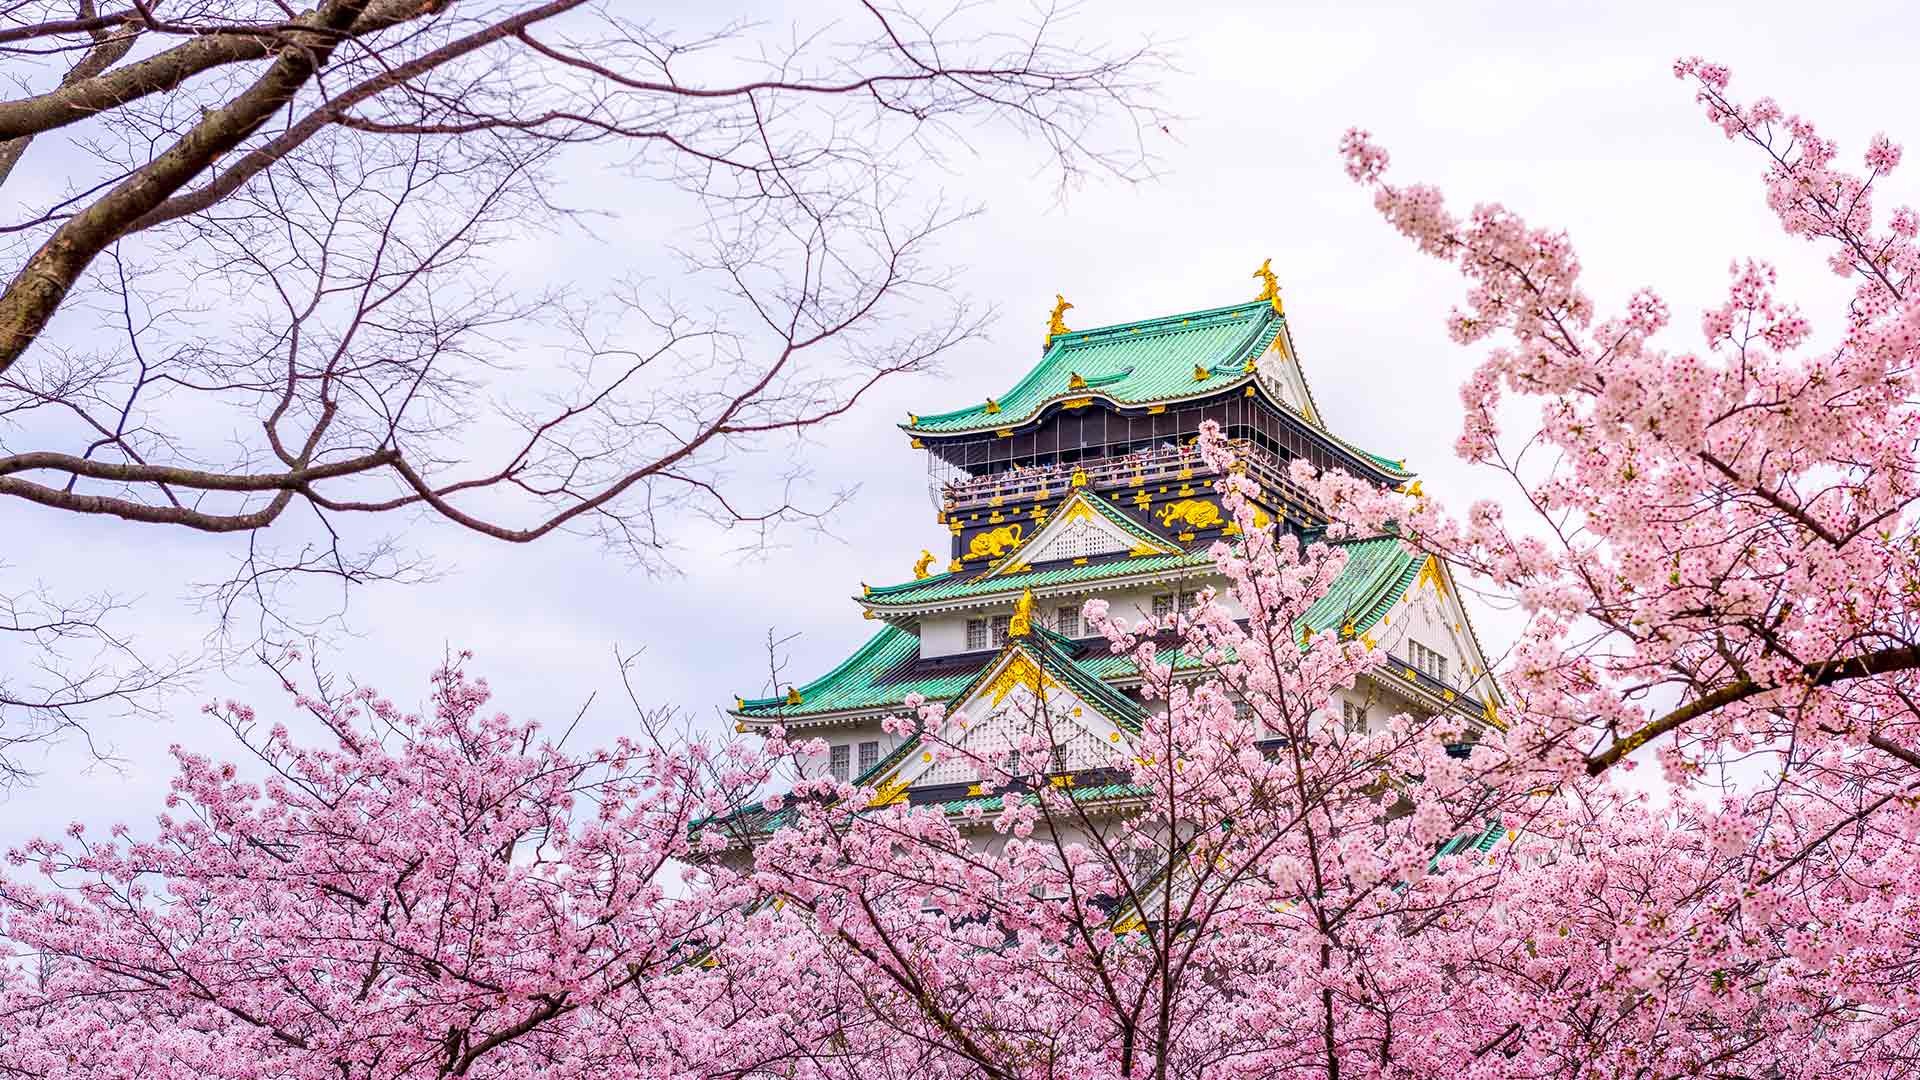 Đến thành phố Osaka có nhiều điểm ngắm hoa anh đào nở rộ